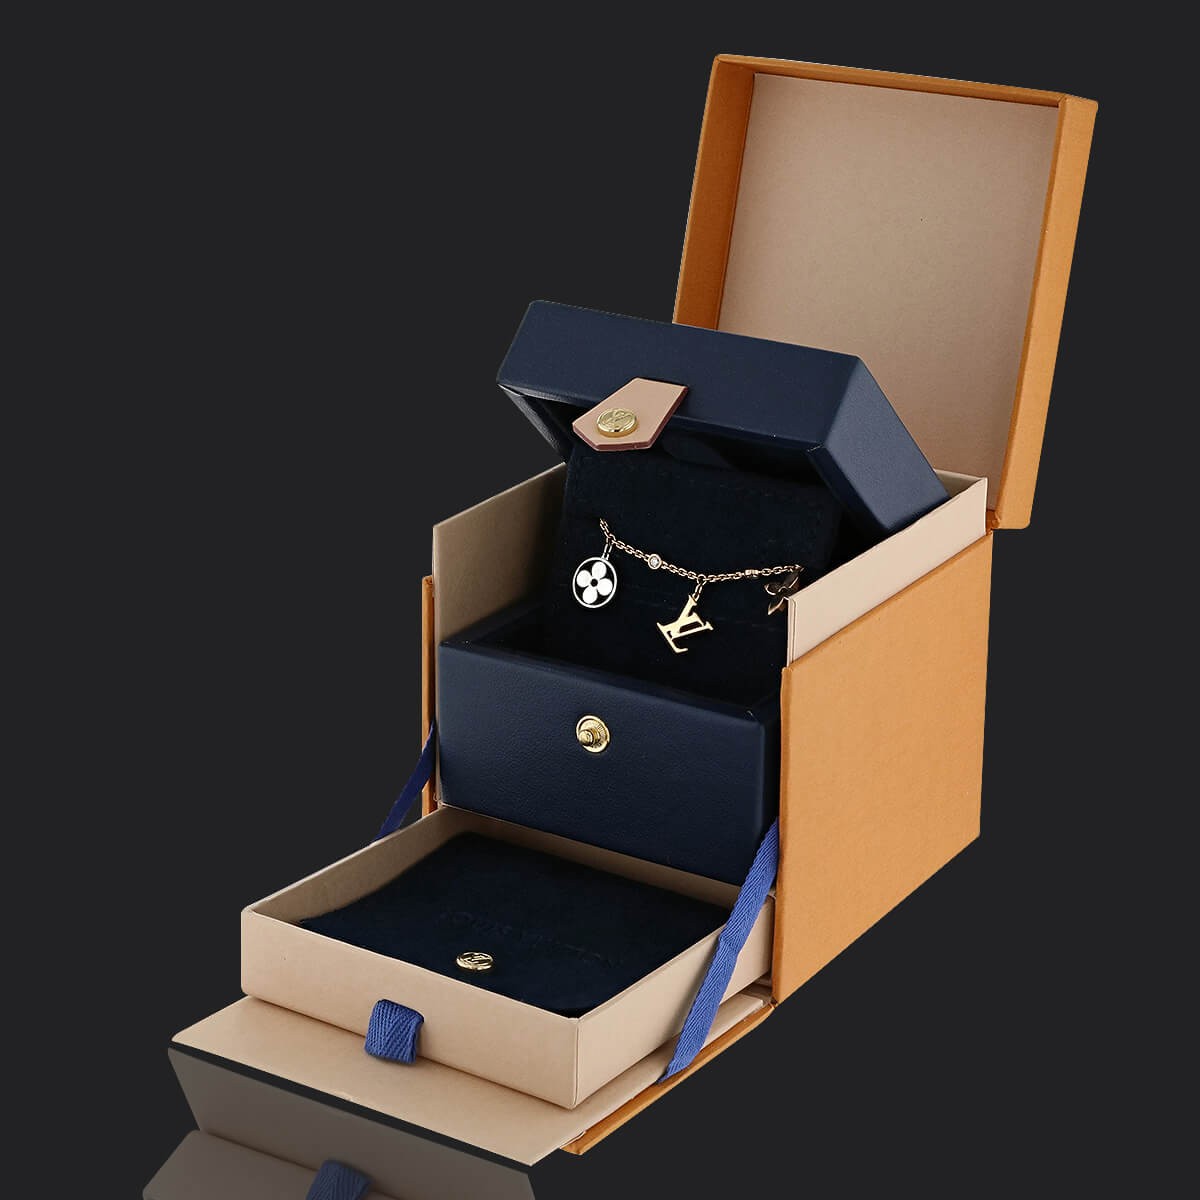 Louis Vuitton Idylle Blossom Monogram Charms Bracelet